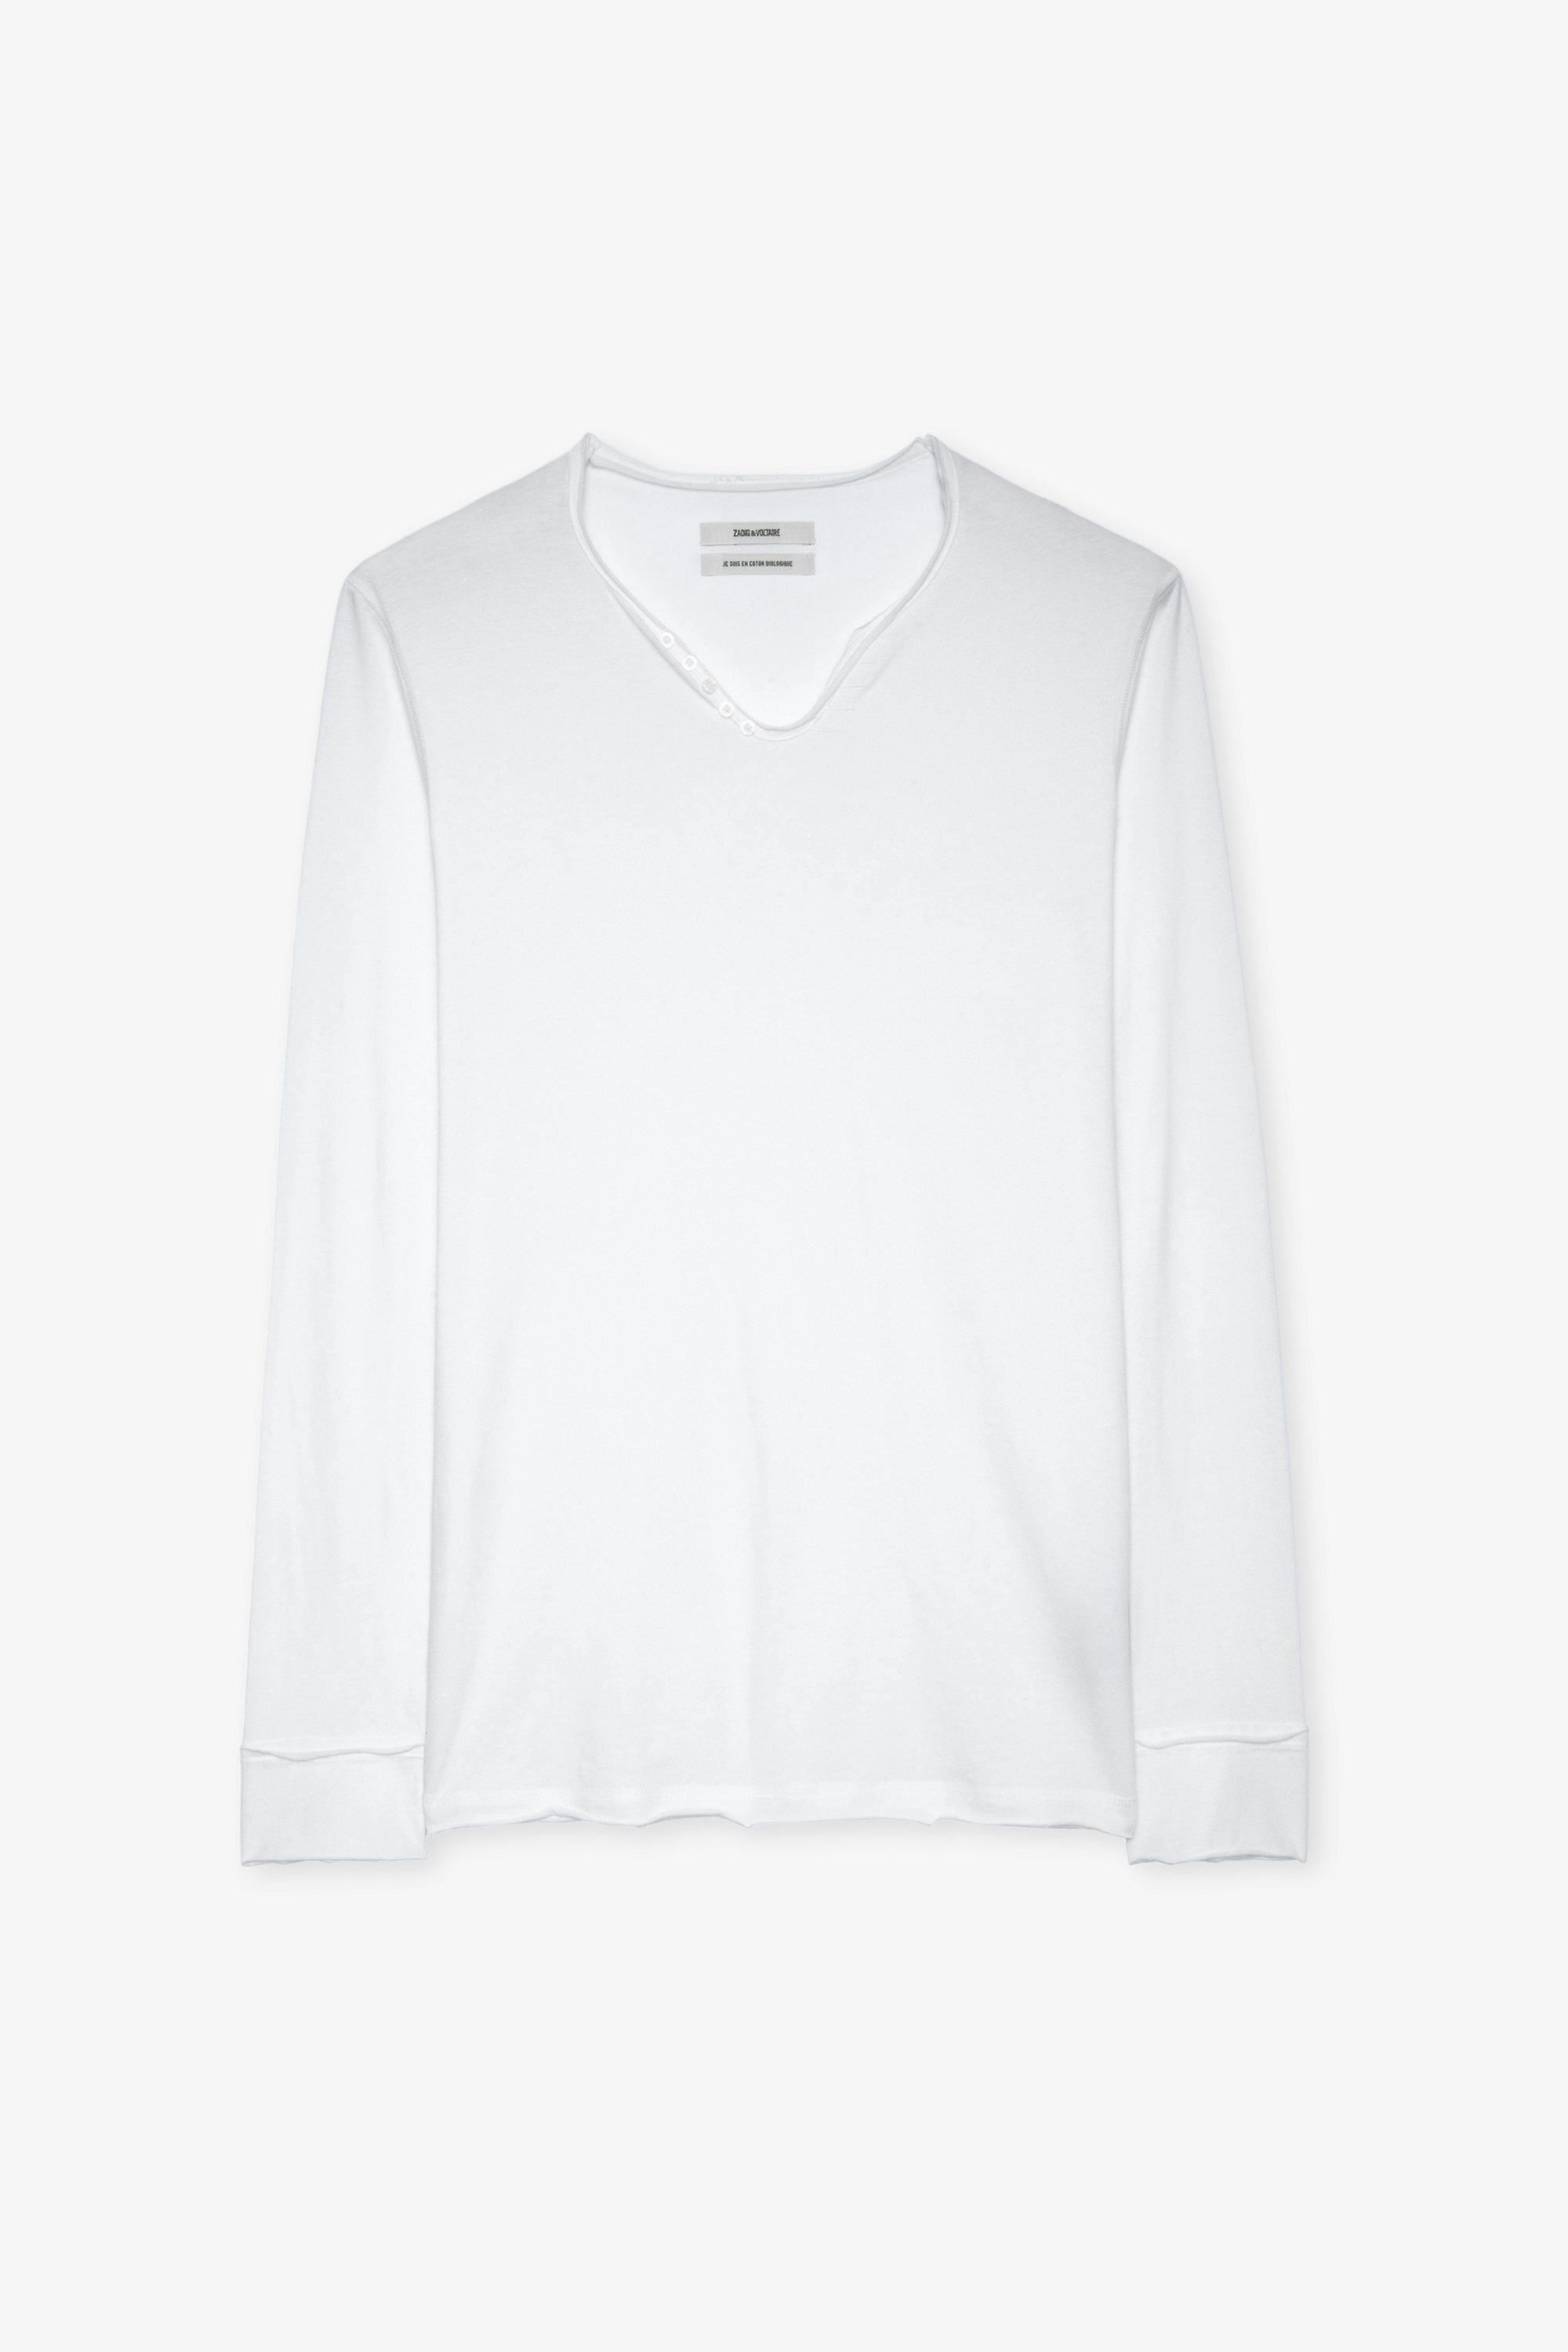 T-shirt Serafino Monastir T-shirt bianca in cotone con collo a serafino